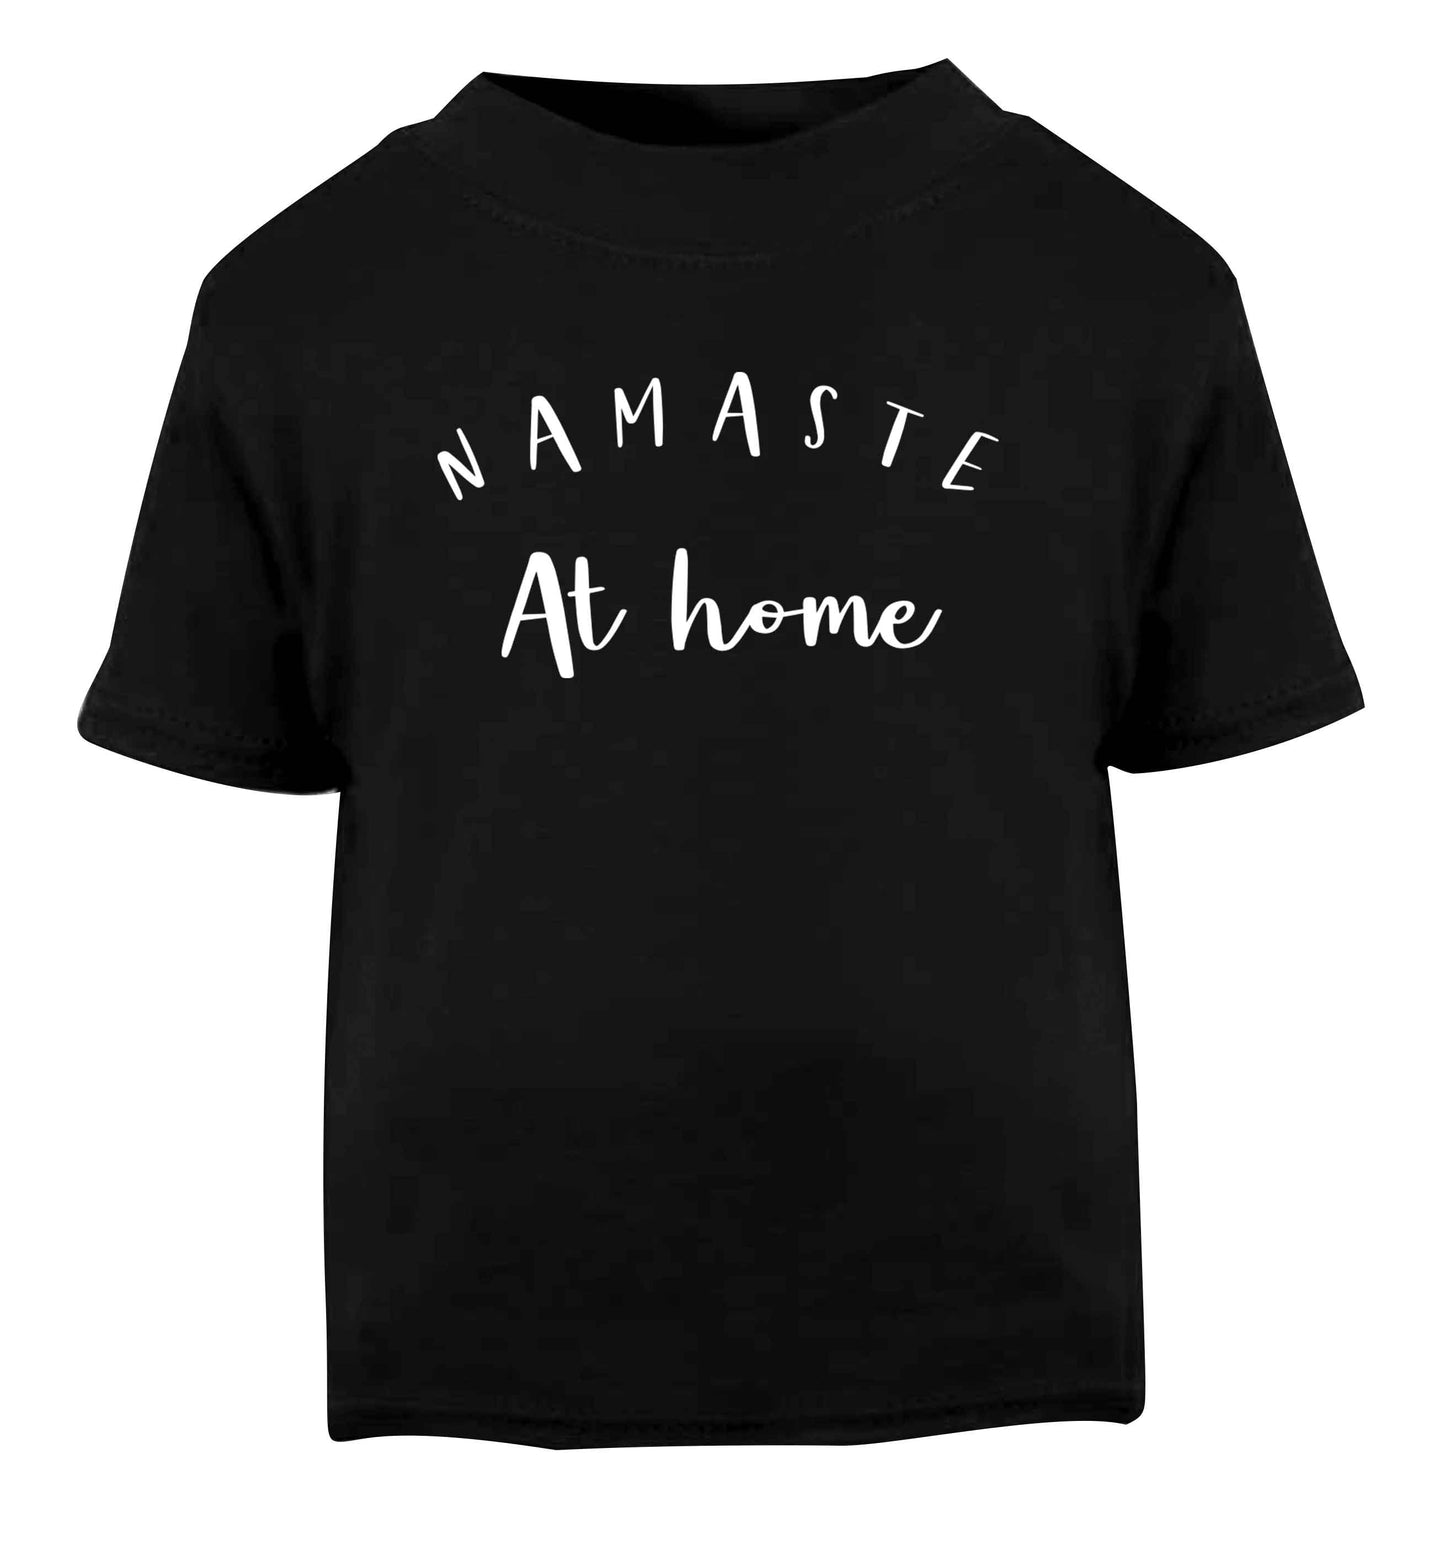 Namaste at home Black Baby Toddler Tshirt 2 years